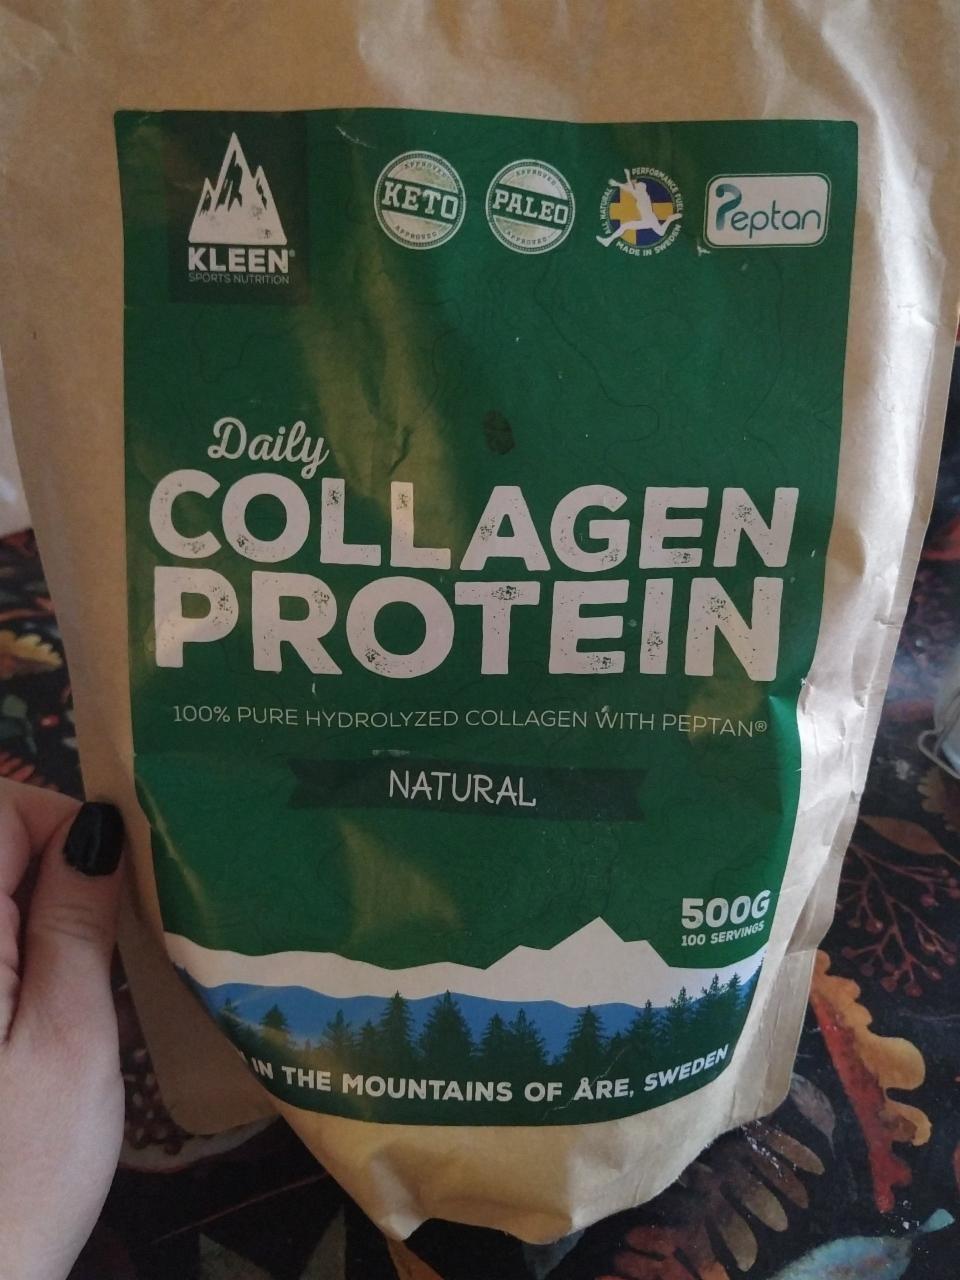 Képek - Daily collagen protein Kleen